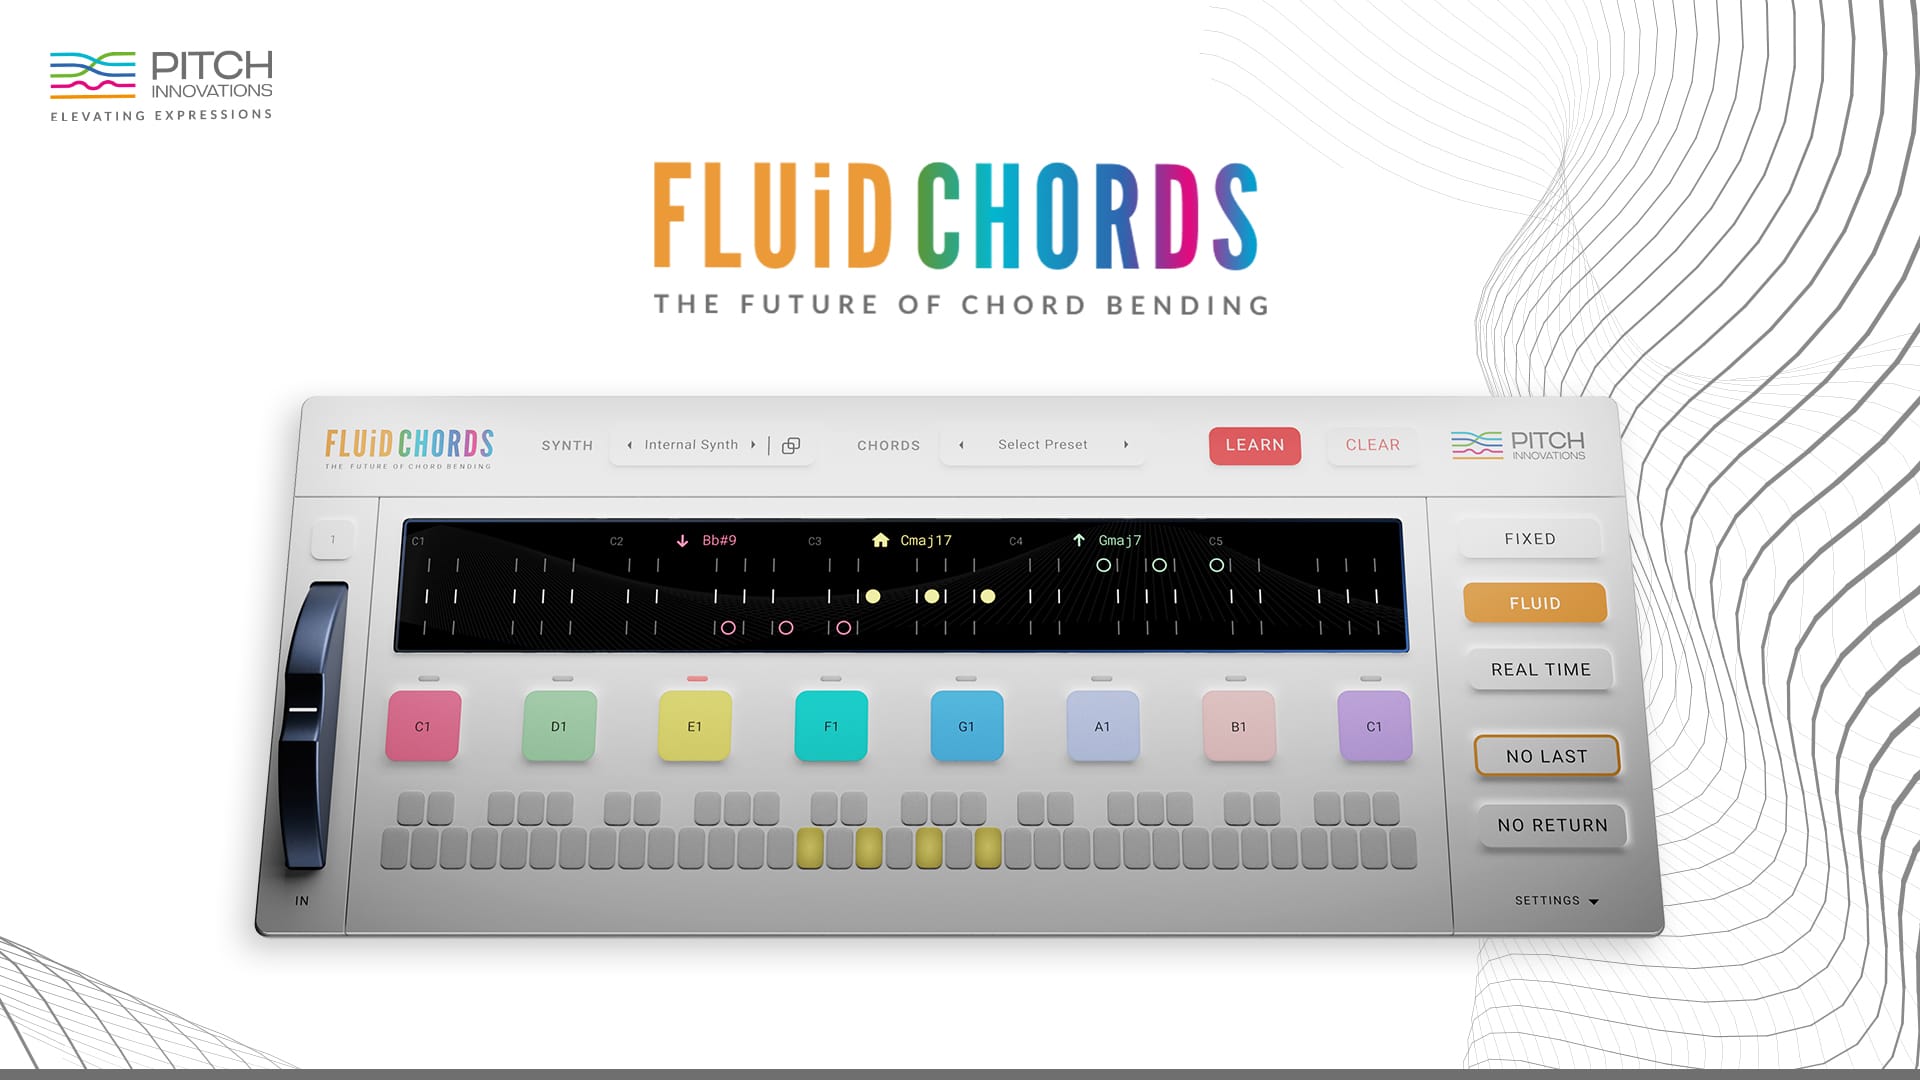 Fluid Chords